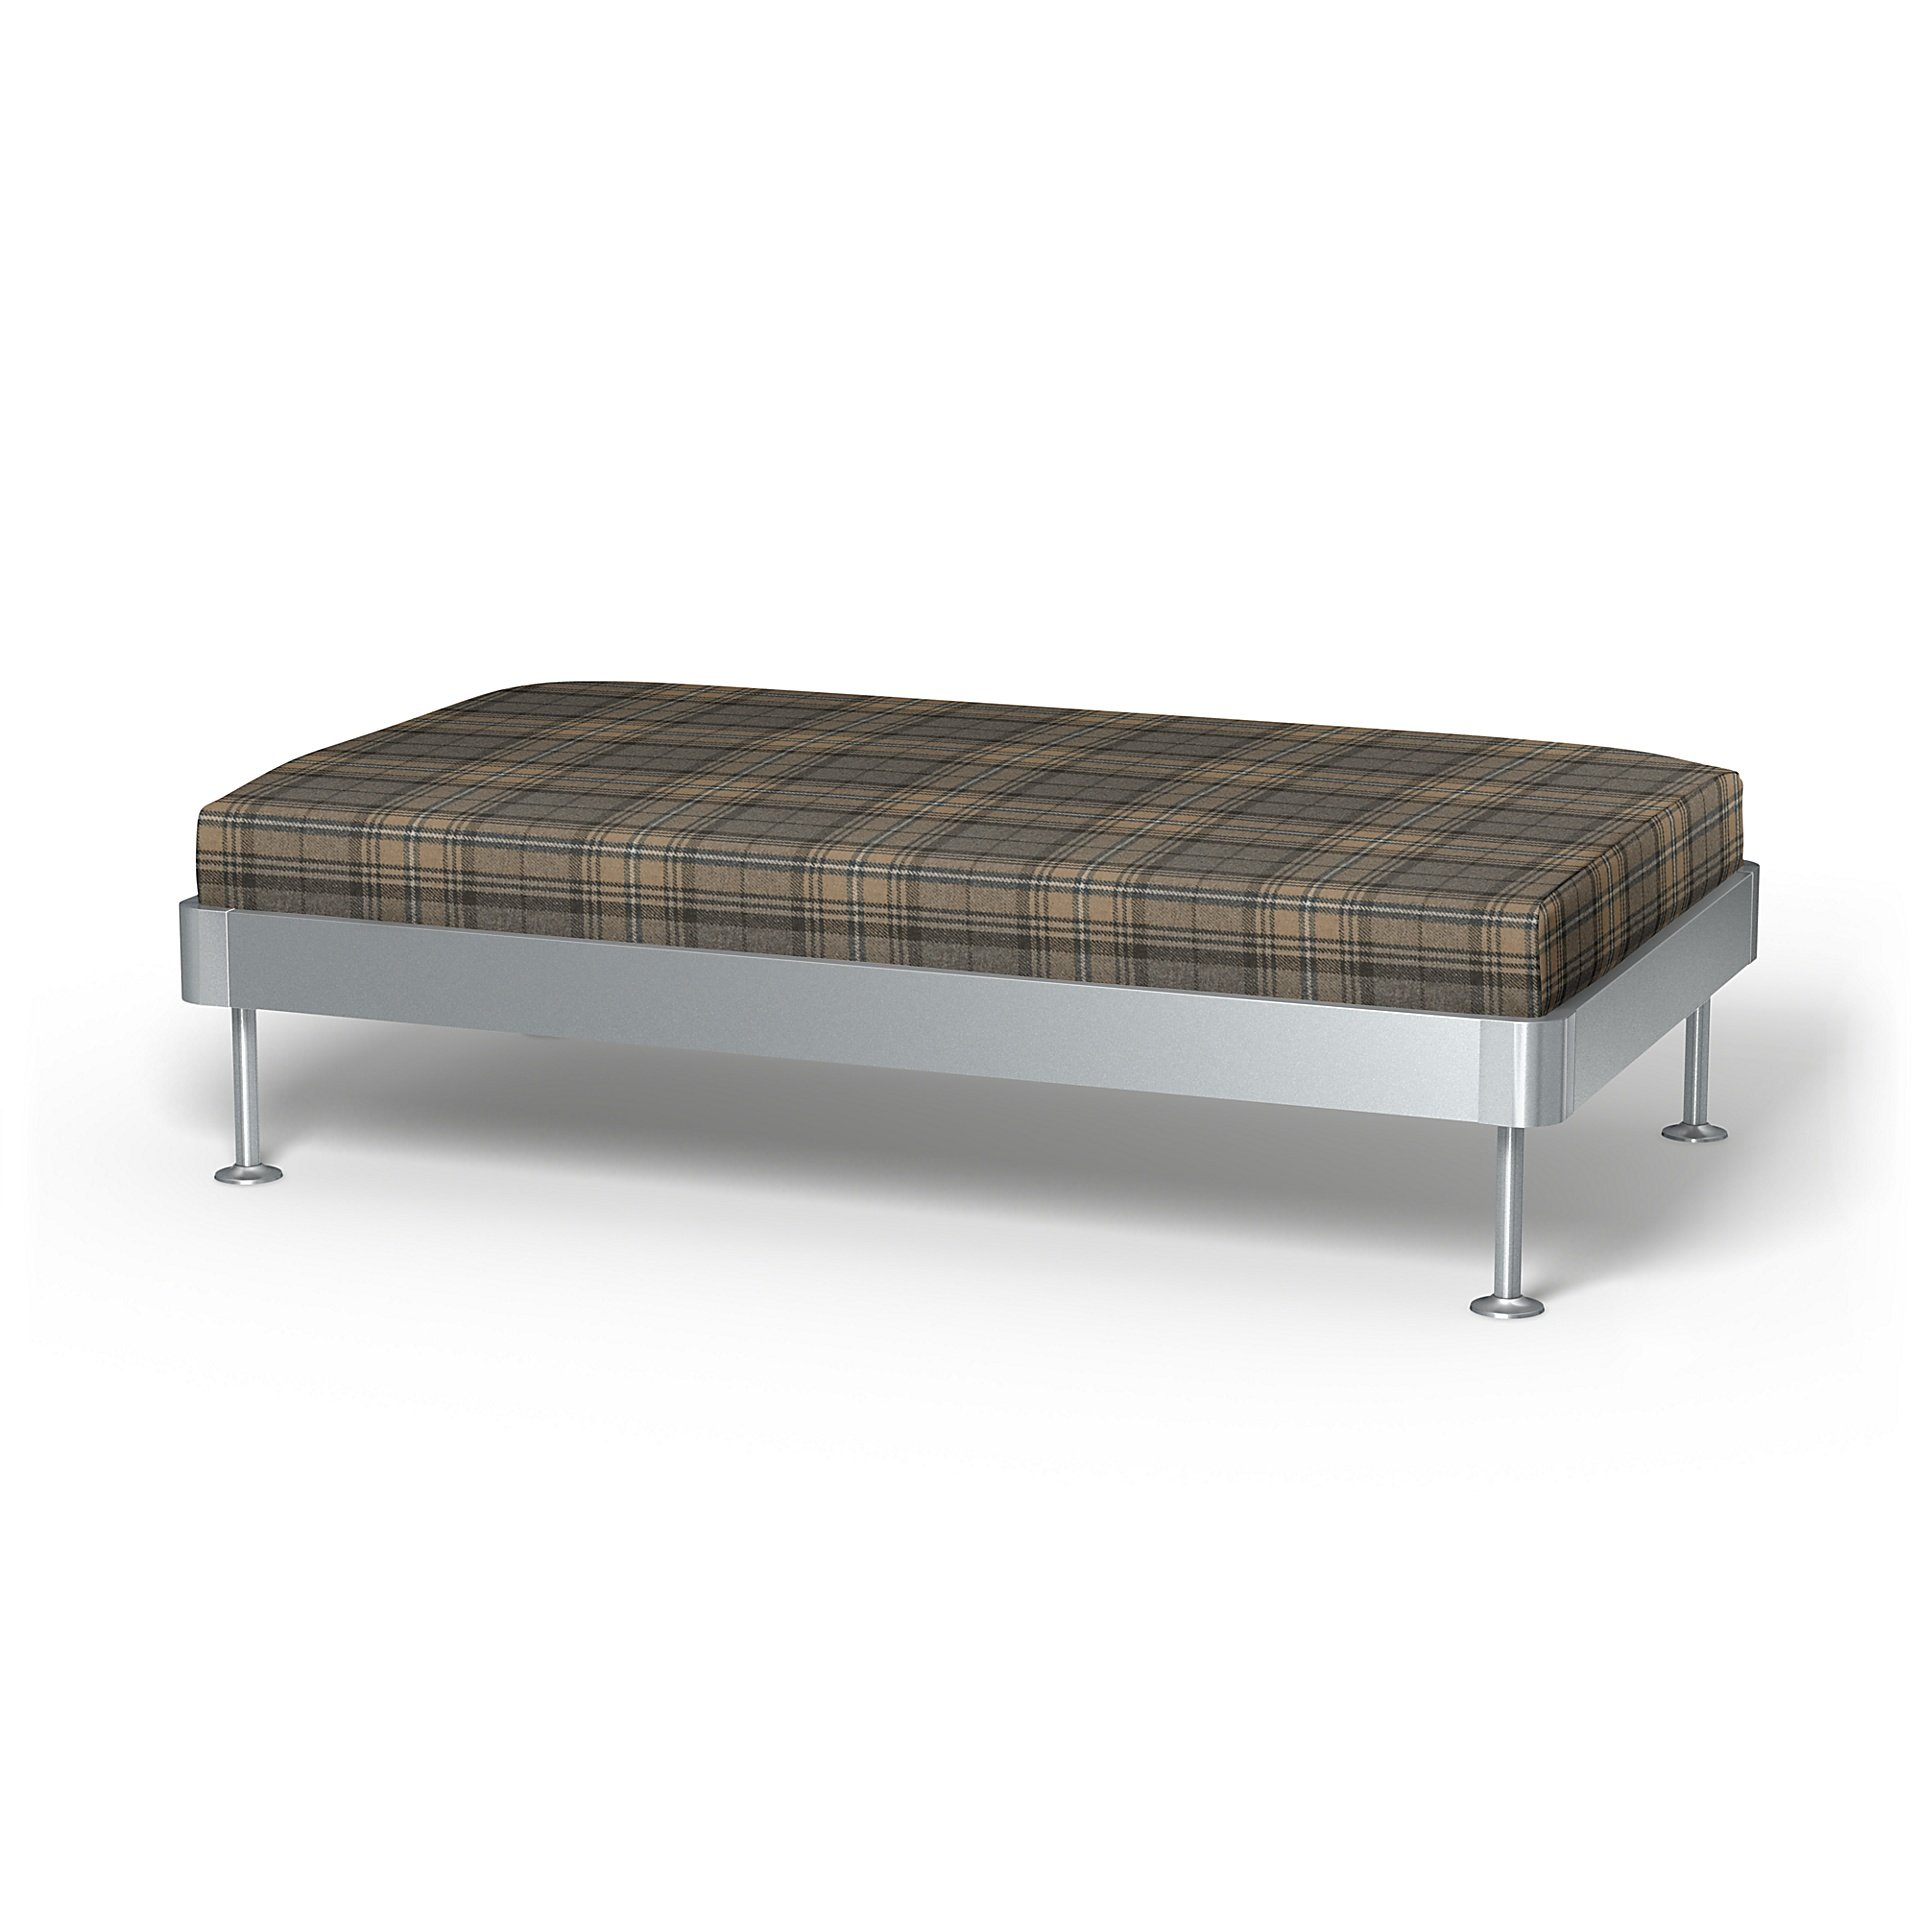 IKEA - Delaktig 2 Seat Platform Cover, Bark Brown, Wool - Bemz